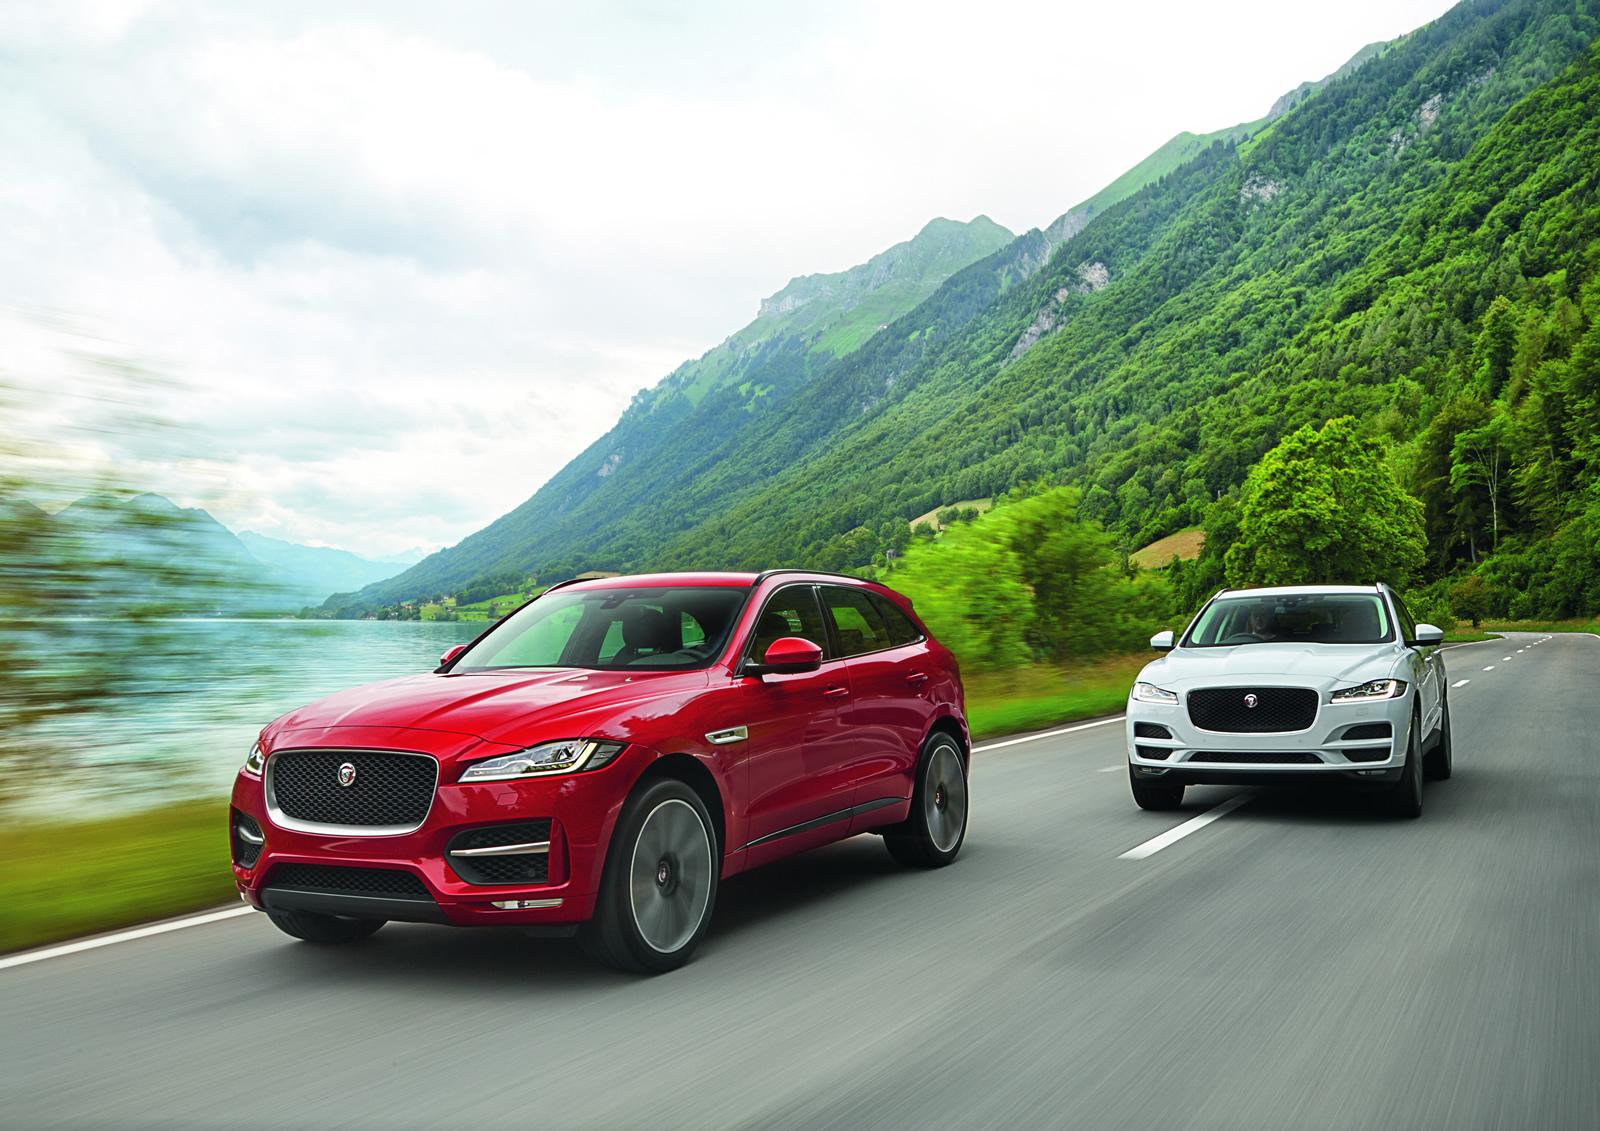 Car Review: Jaguar Luxury Drive Experience